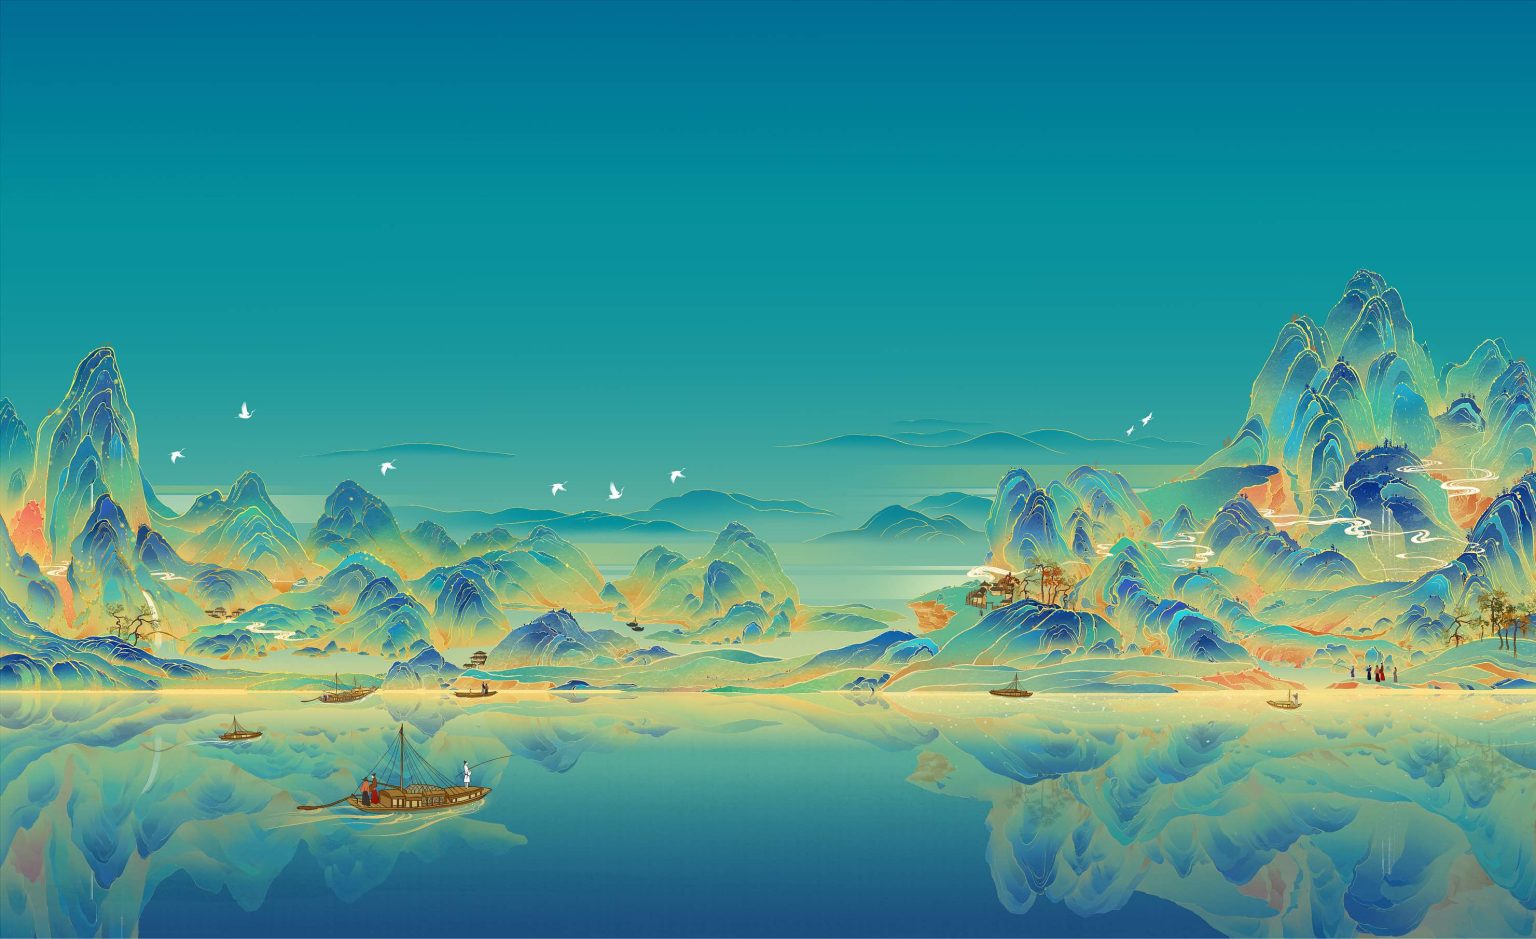 中国十大传世名画之一《千里江山图》全卷高清欣赏（细节放大）_王希孟